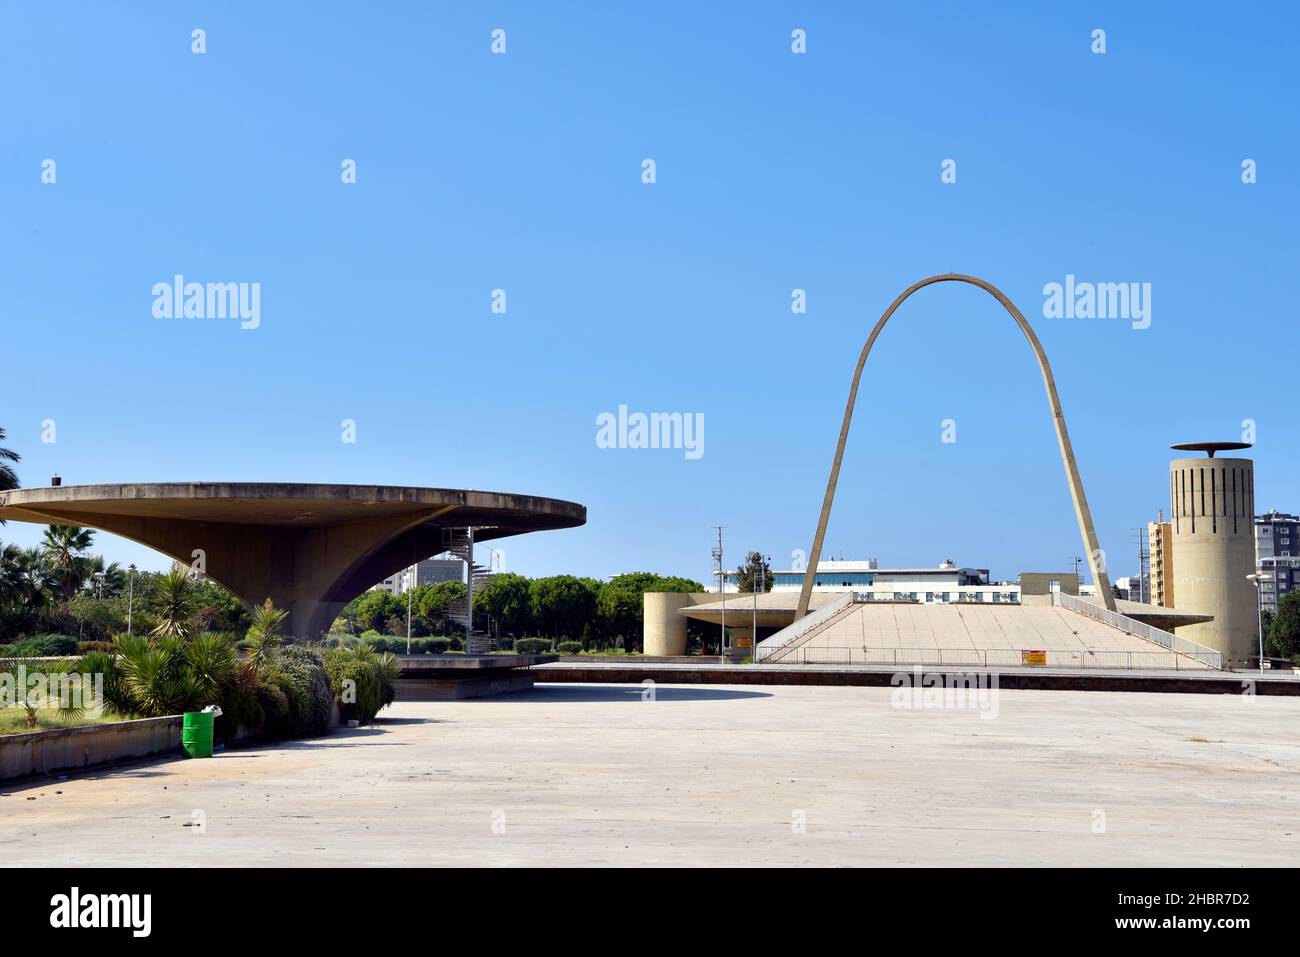 Parte della Fiera Internazionale di Rachid Karami del noto architetto brasiliano Oscar Niemeyer (1907-2012), Tripoli (traboante), nord del Libano. Foto Stock